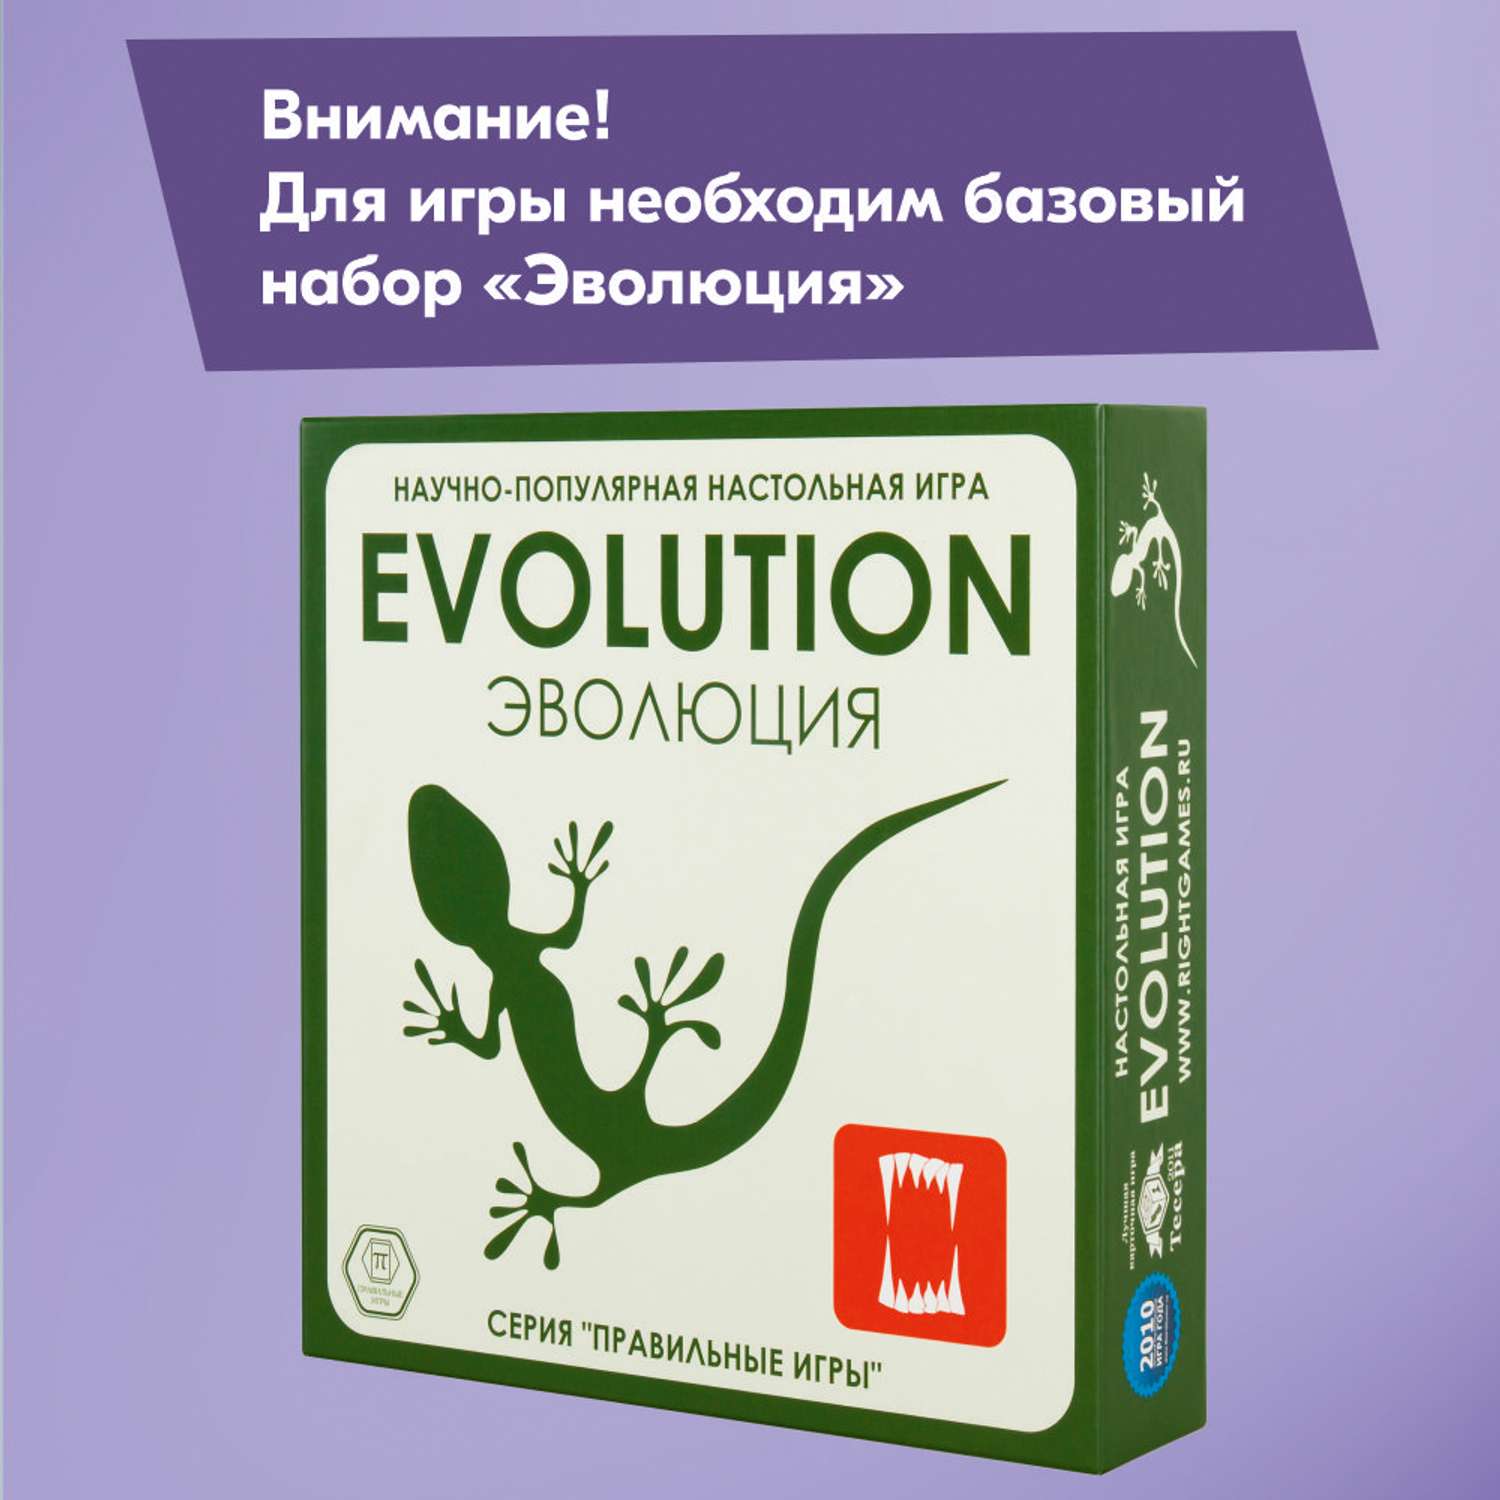 Набор СЕРИЯ ПРАВИЛЬНЫЕ ИГРЫ Эволюция дополнение Трава и грибы - фото 2